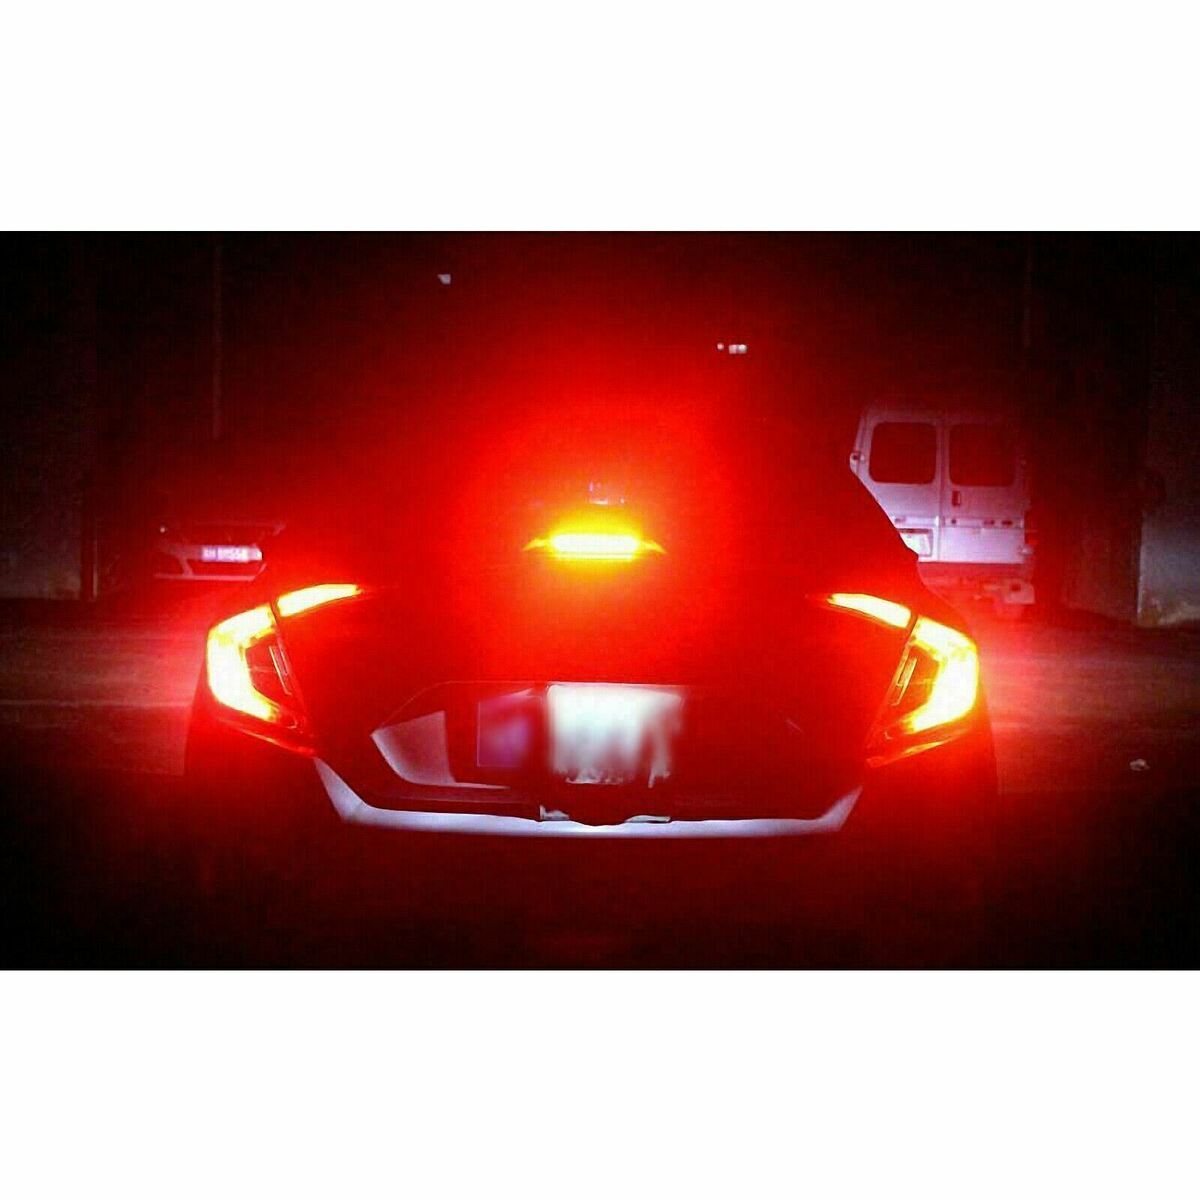 Honda Civic red light blinking